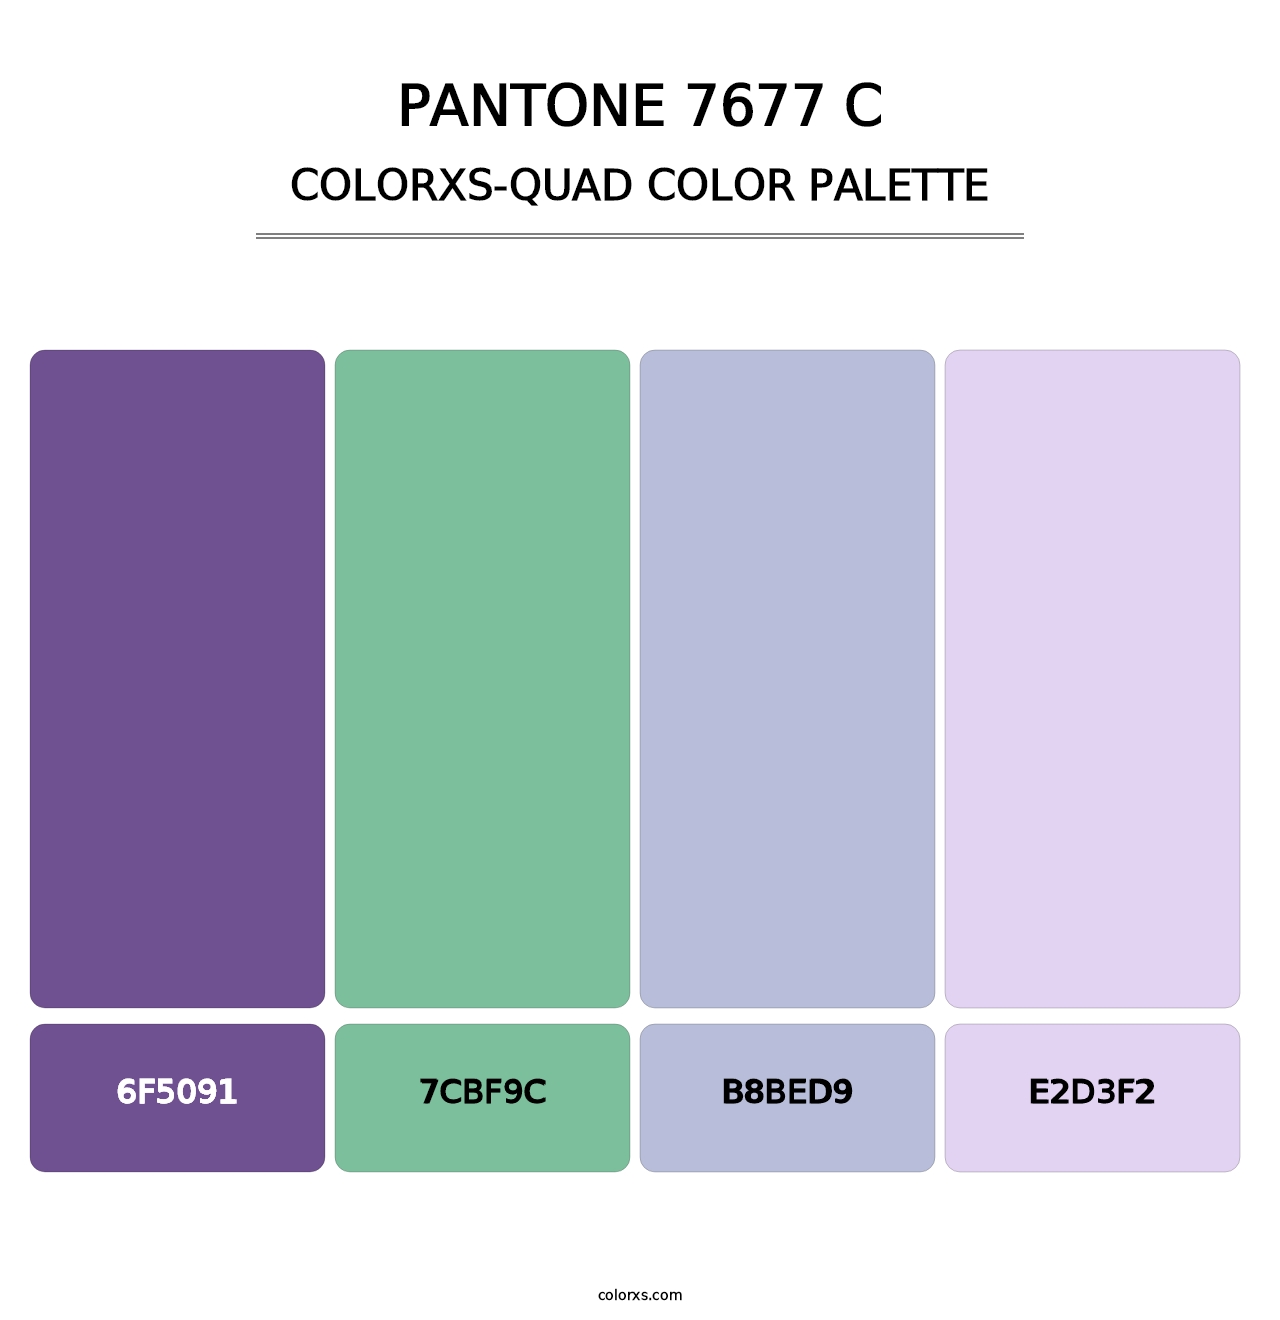 PANTONE 7677 C - Colorxs Quad Palette